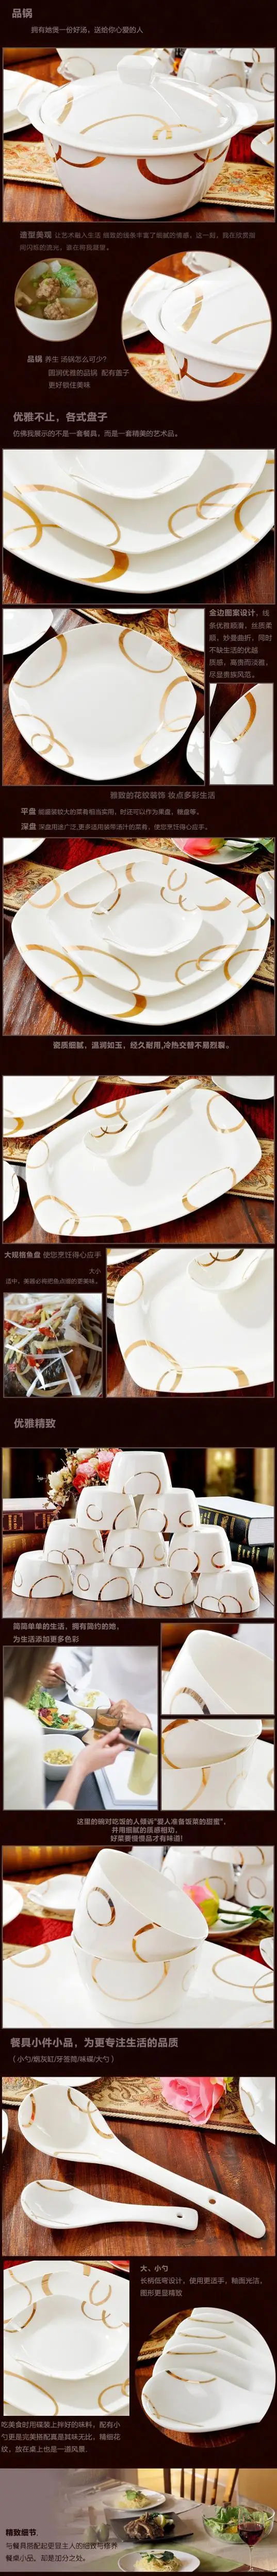 Хорошее качество керамики посуда наборы 56 шт. костяного фарфора посуда набор фарфоровой посуды корейский стиль квадратные тарелки наборы посуды